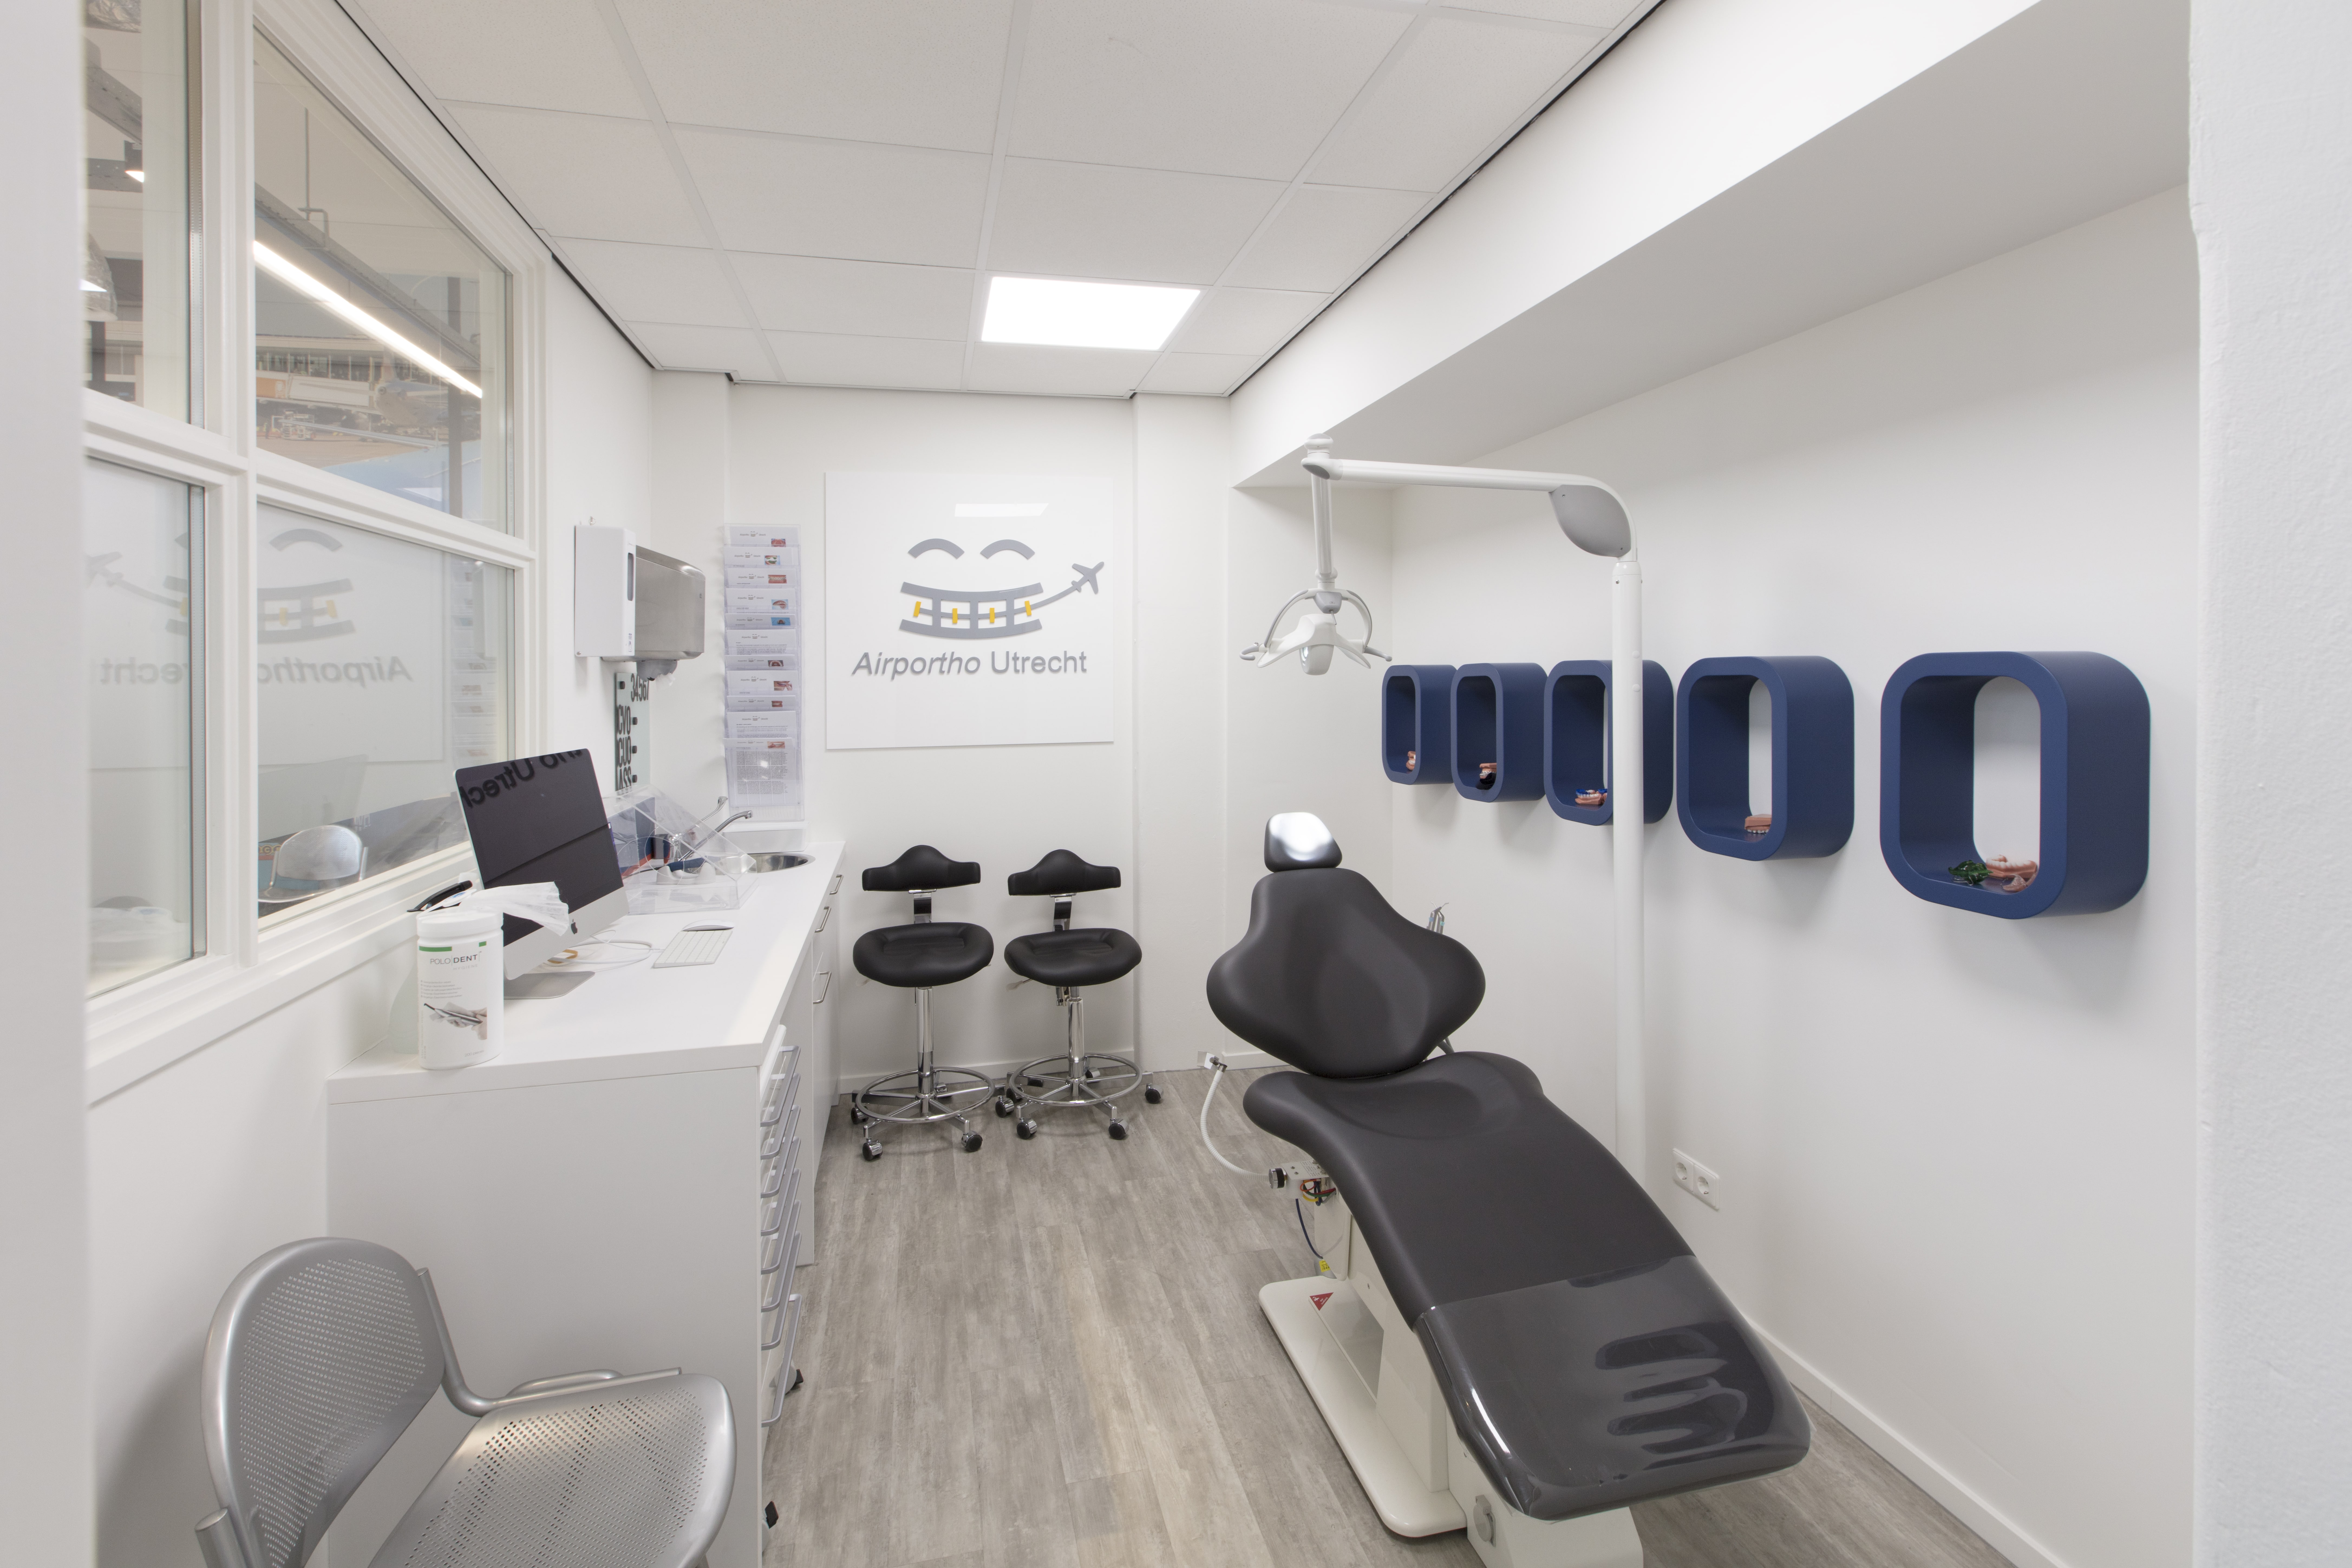 Behandelkamer van de orthodontist in Utrecht: Airportho Utrecht